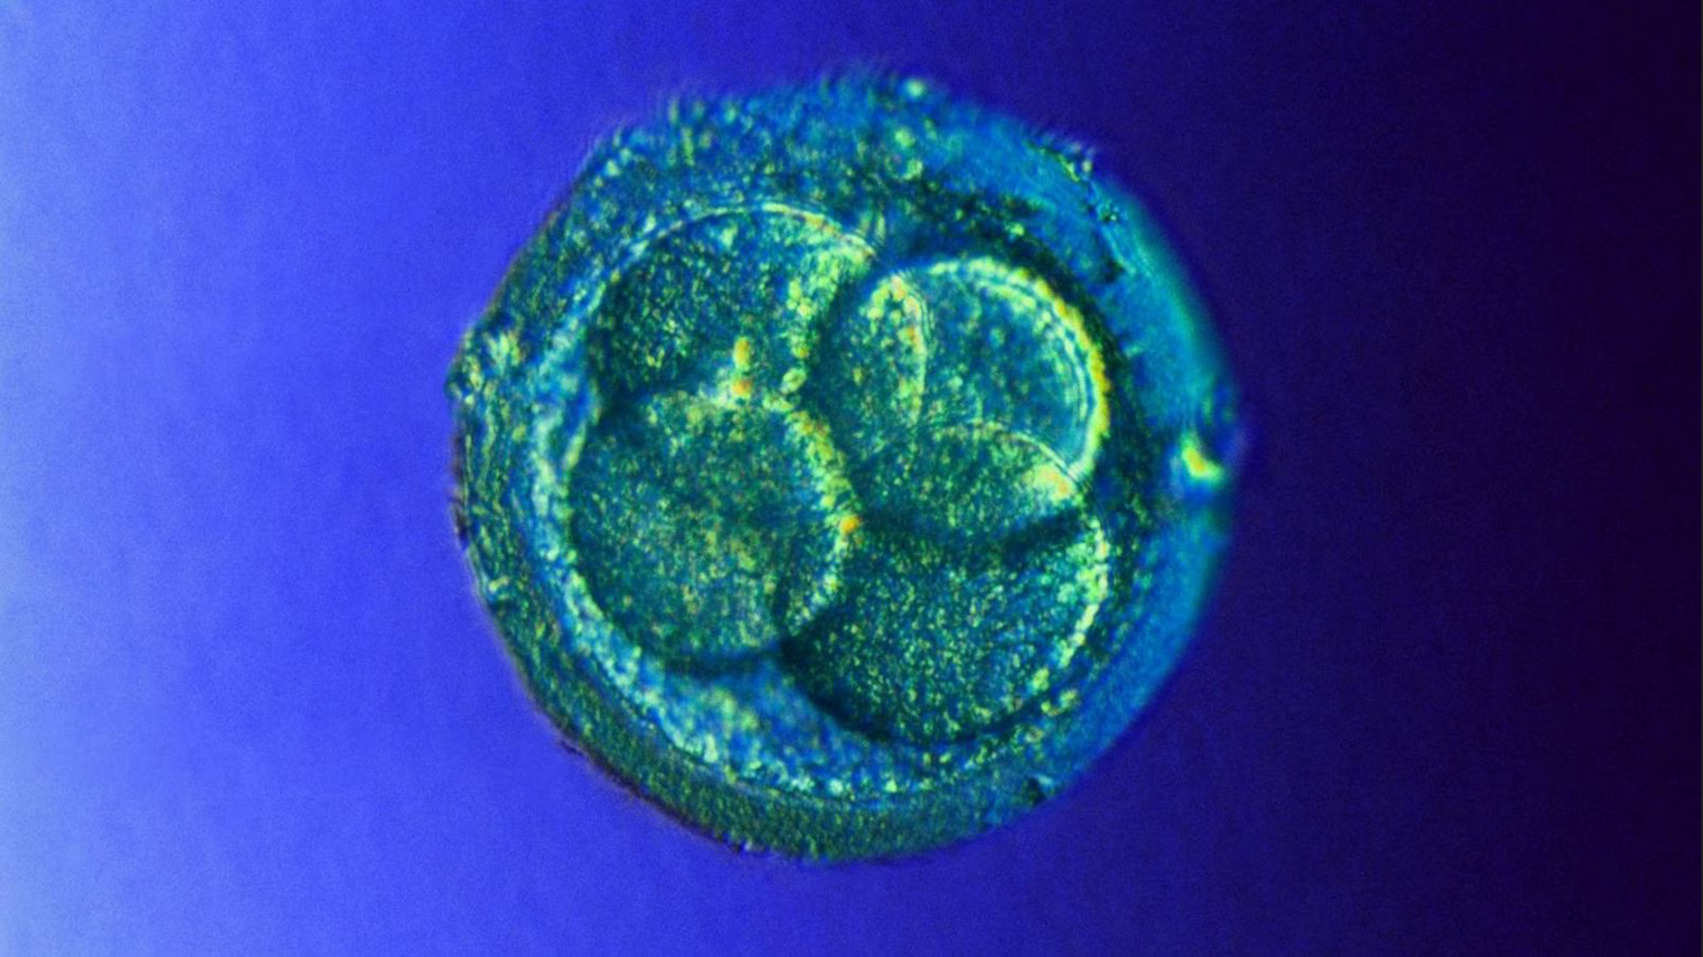 А так выглядит человеческий эмбрион